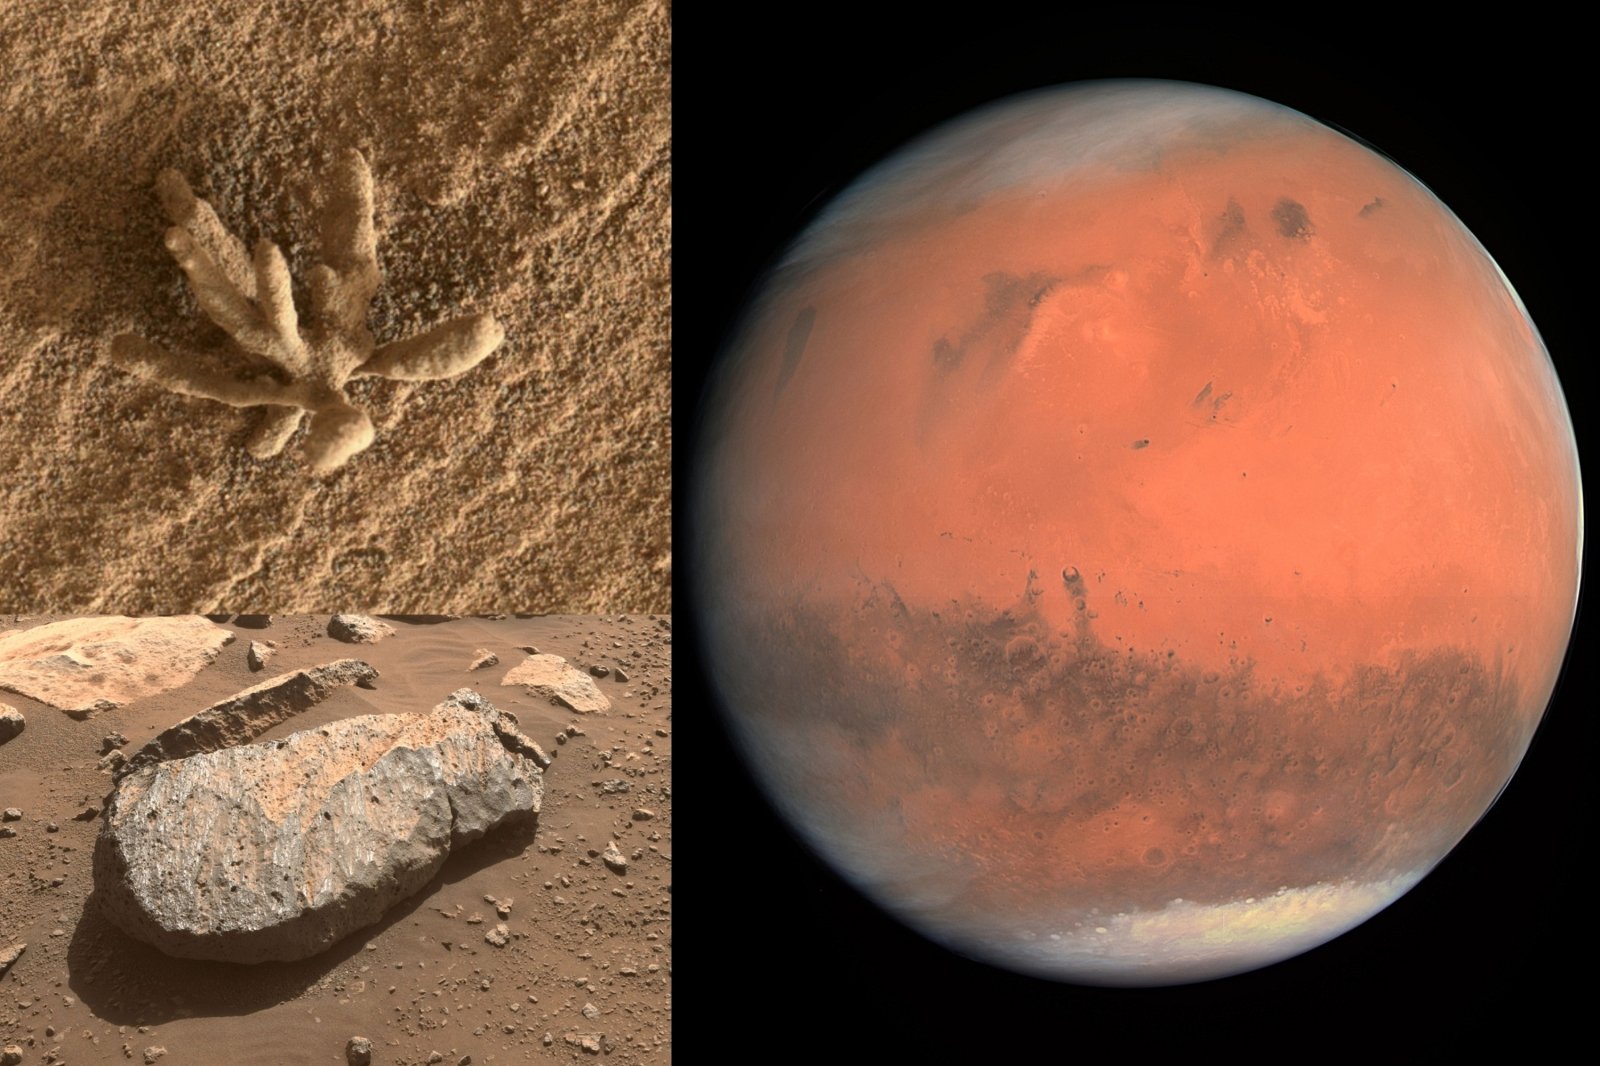 Forskere som leter etter utenomjordisk liv rapporterer en oppsiktsvekkende oppdagelse: Livet må ha dannet seg på Mars på samme måte som det gjorde på jorden